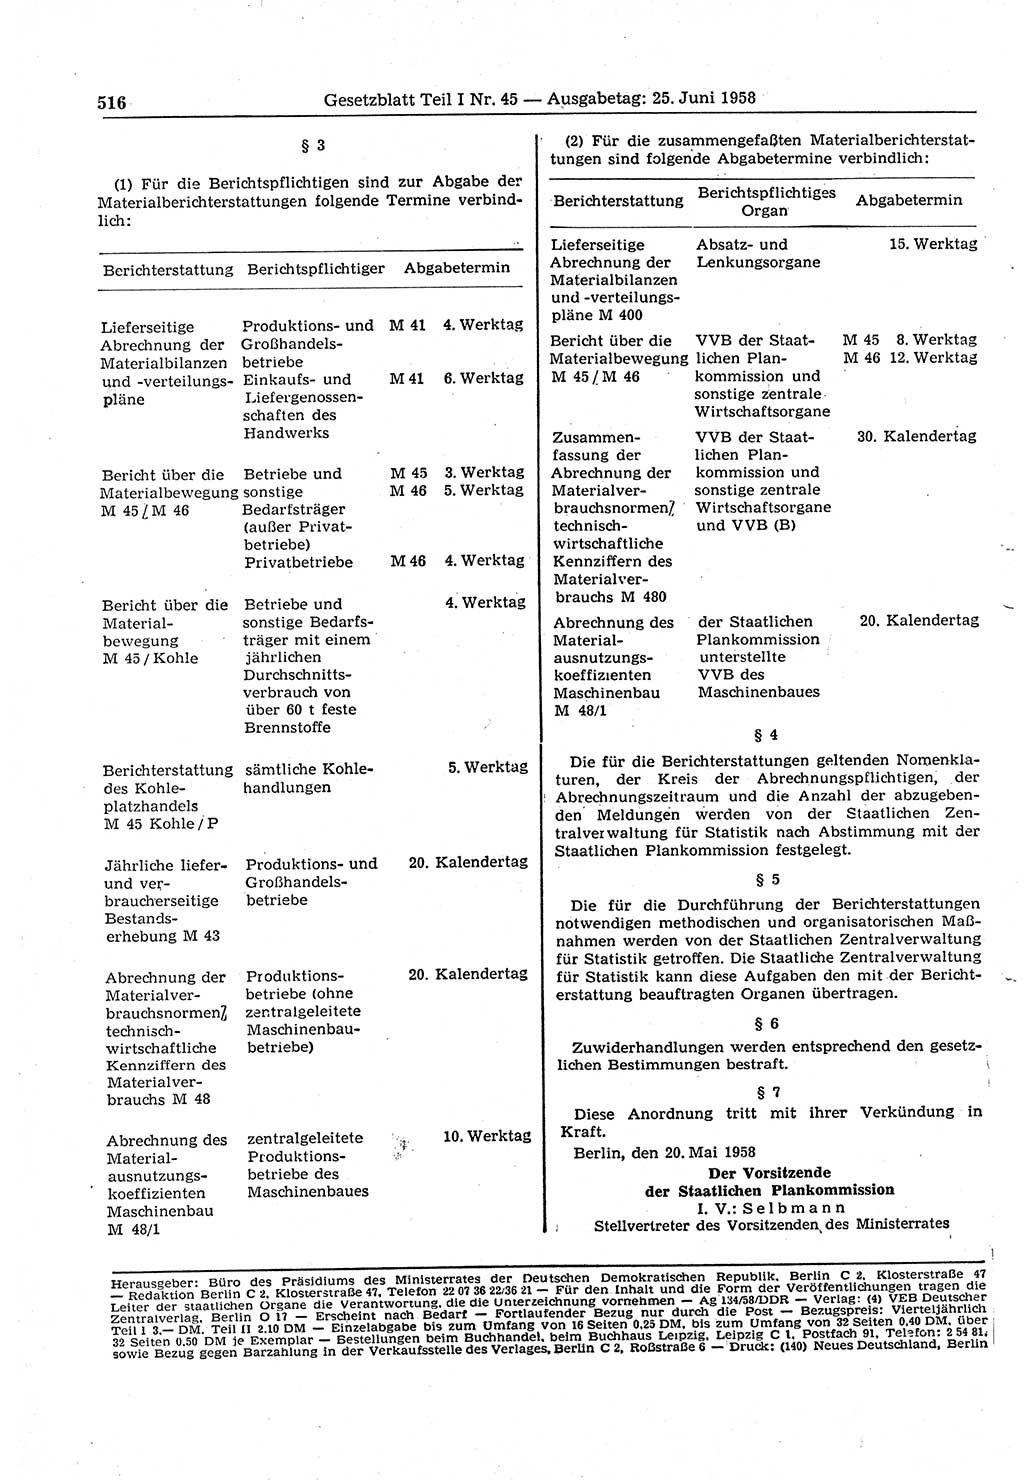 Gesetzblatt (GBl.) der Deutschen Demokratischen Republik (DDR) Teil Ⅰ 1958, Seite 516 (GBl. DDR Ⅰ 1958, S. 516)